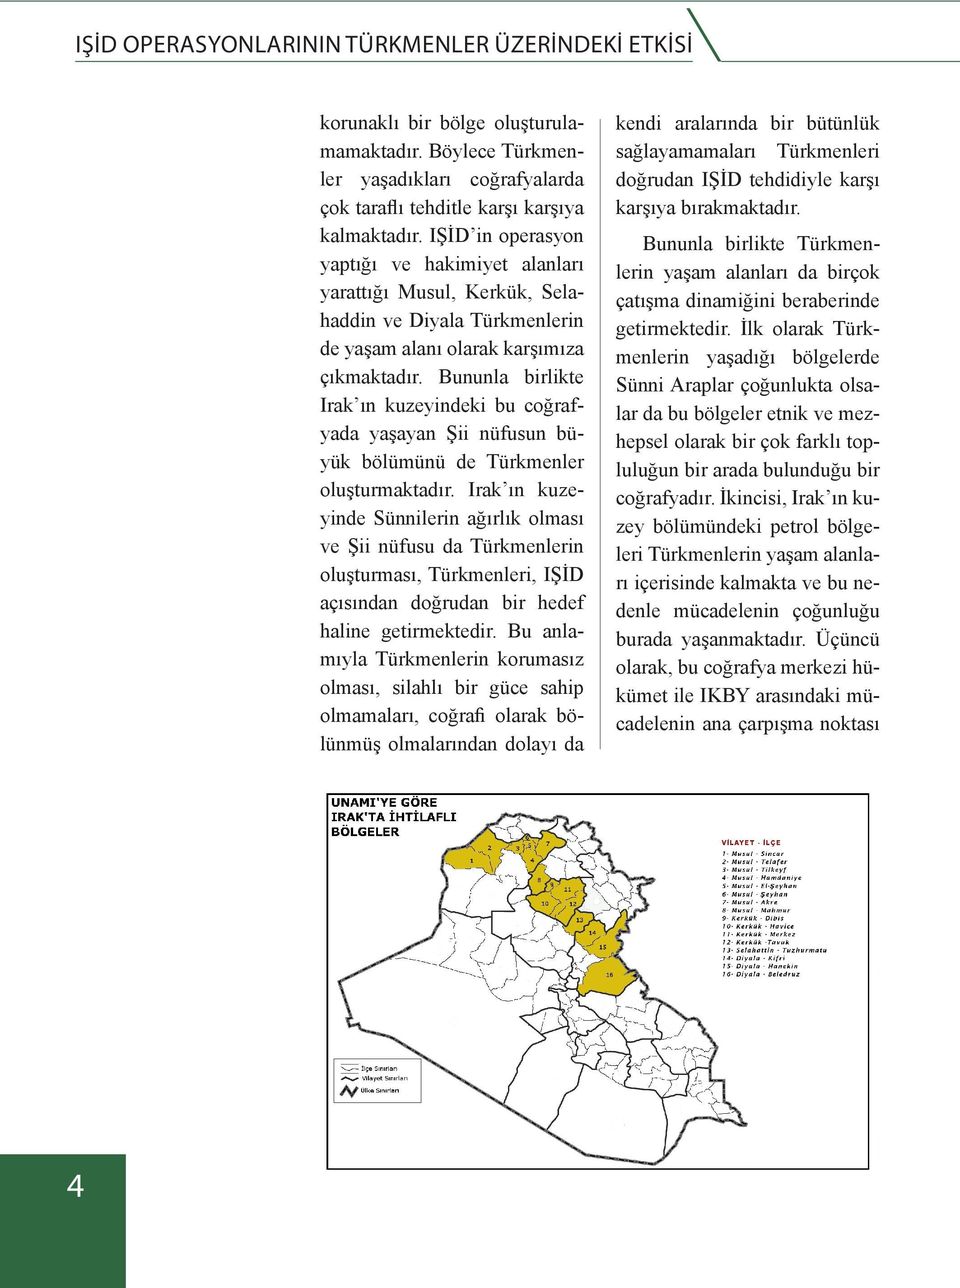 Bununla birlikte Irak ın kuzeyindeki bu coğrafyada yaşayan Şii nüfusun büyük bölümünü de Türkmenler oluşturmaktadır.